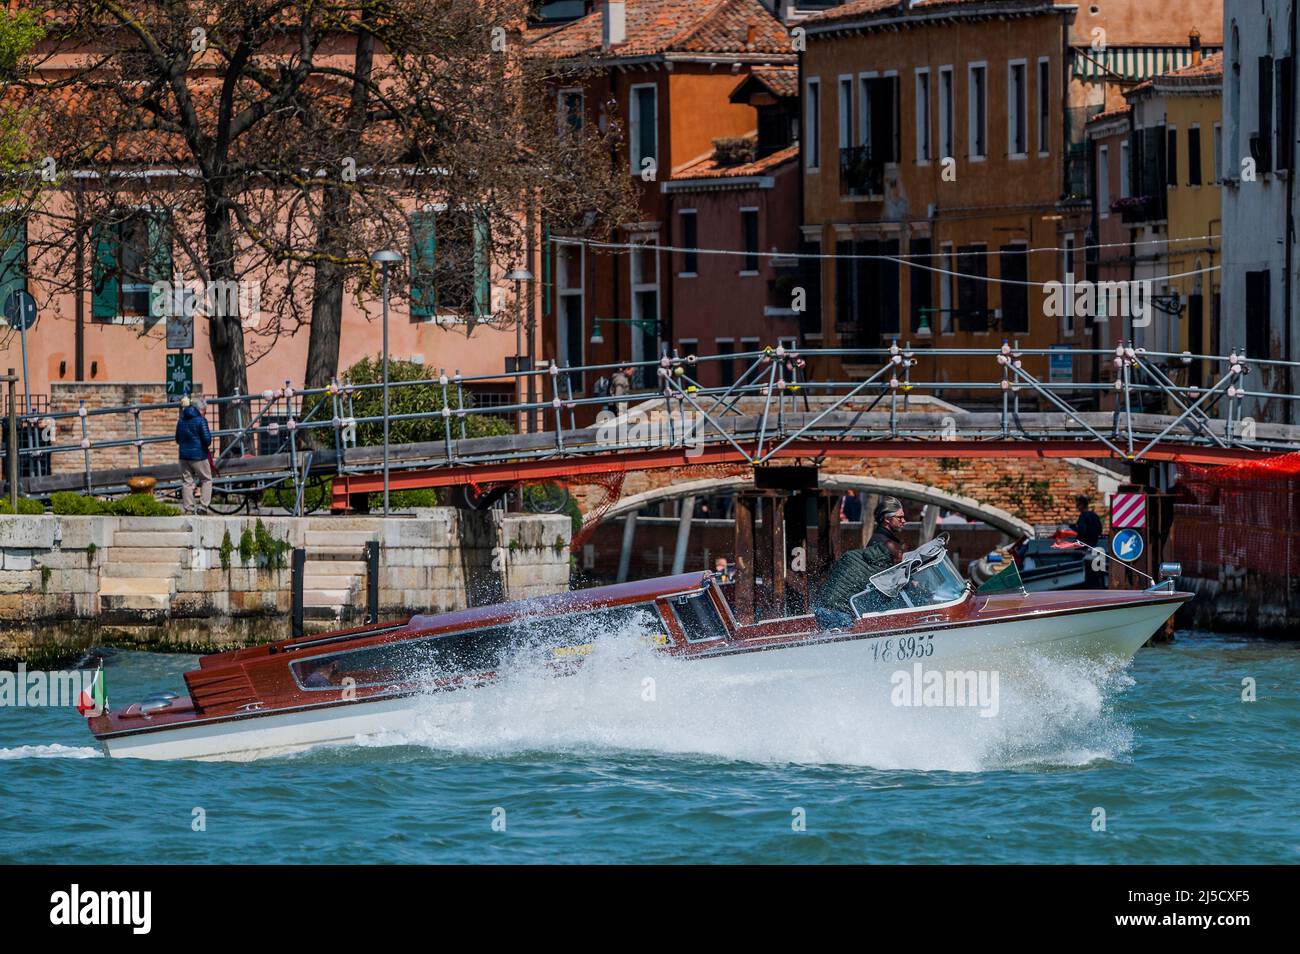 Les canaux sont les artères principales qui portent toutes les formes de transport de l'eau - Venise au début de la Biennale di Venezia en 2022. Banque D'Images